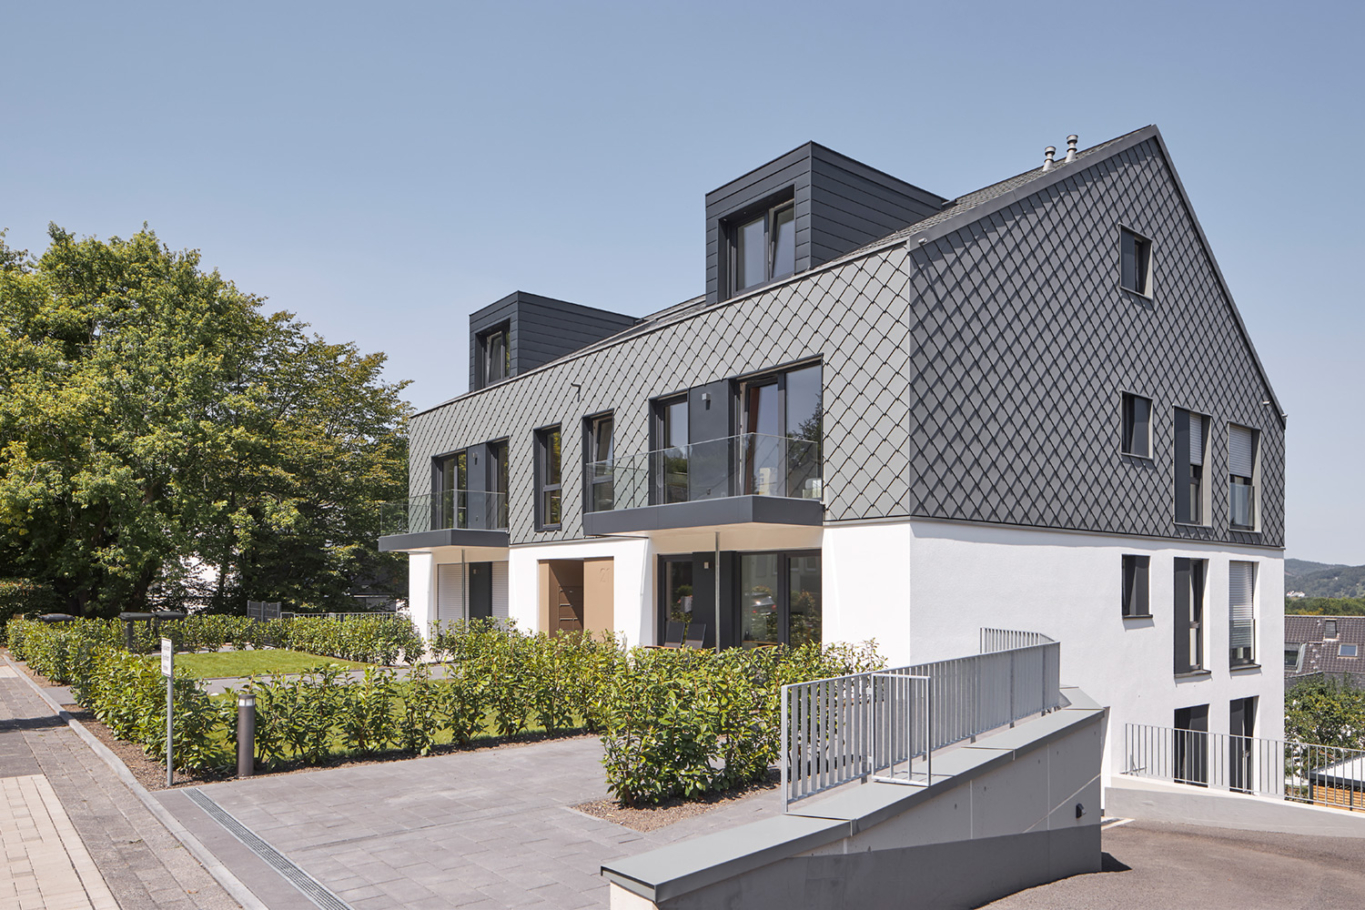 Architekturfotografie: Neubau eines Mehrfamilienhauses mit neun Wohnungen am Hang gebaut. Die Fassade ist teilweise mit grauen Schindeln in Rautenform gestaltet.